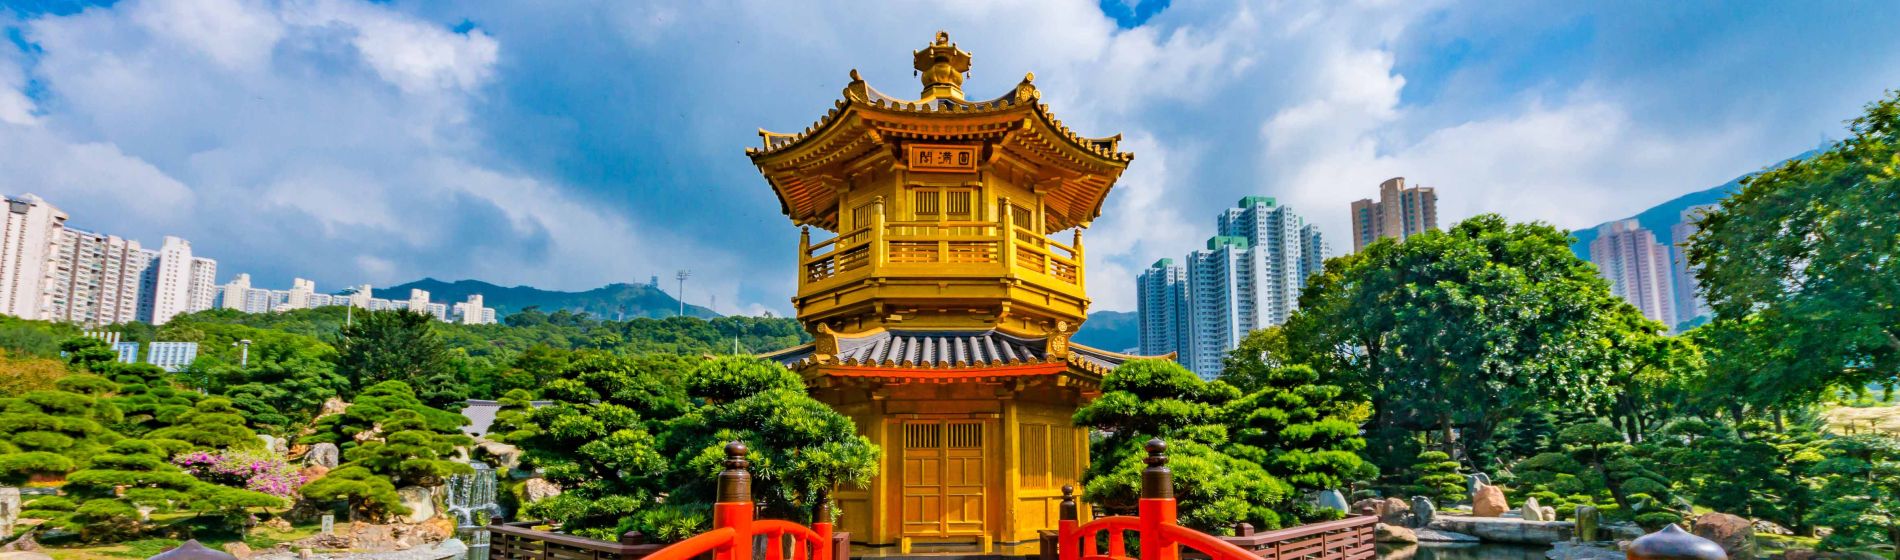 goldene_pagode_des_nan-lian-gartens_in_der_stadt_hongkong.jpg